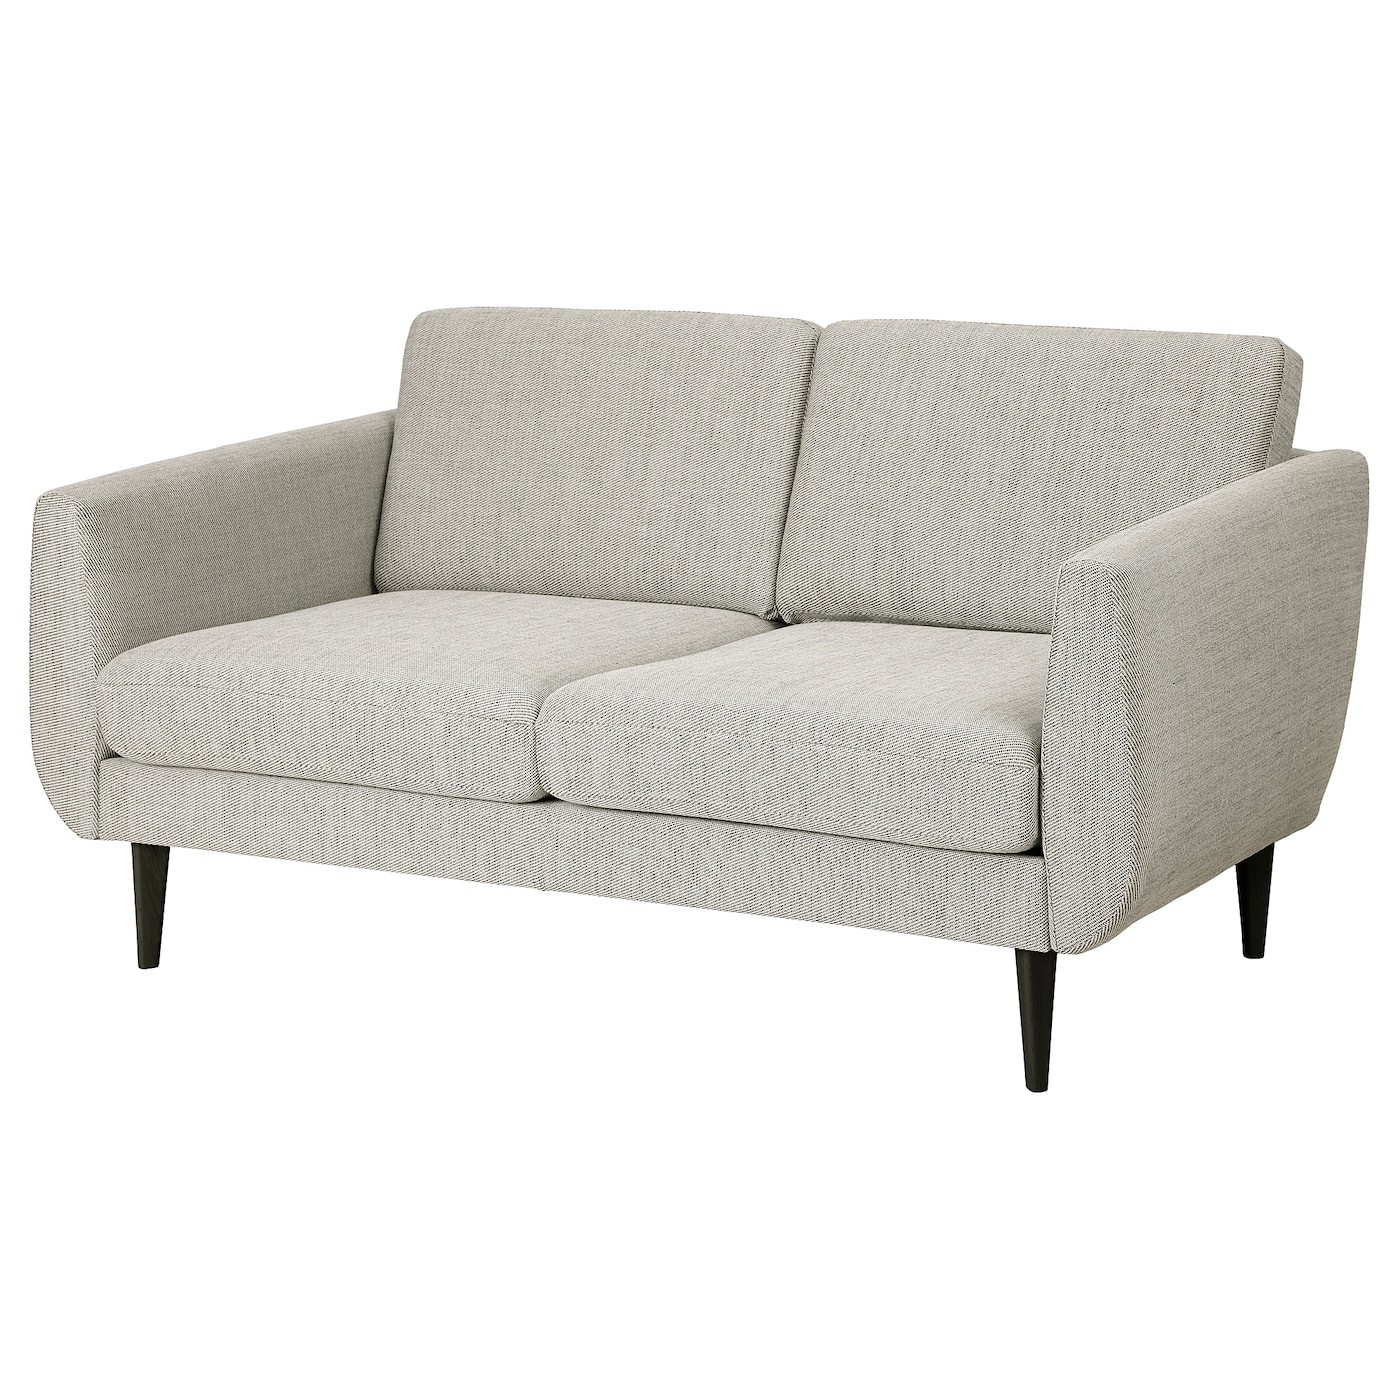 СМЕДСТОРП 2-местный диван, Виарп бежевый/коричневый/черный SMEDSTORP IKEA диван офисный шарм дизайн бит с подушками коричневый